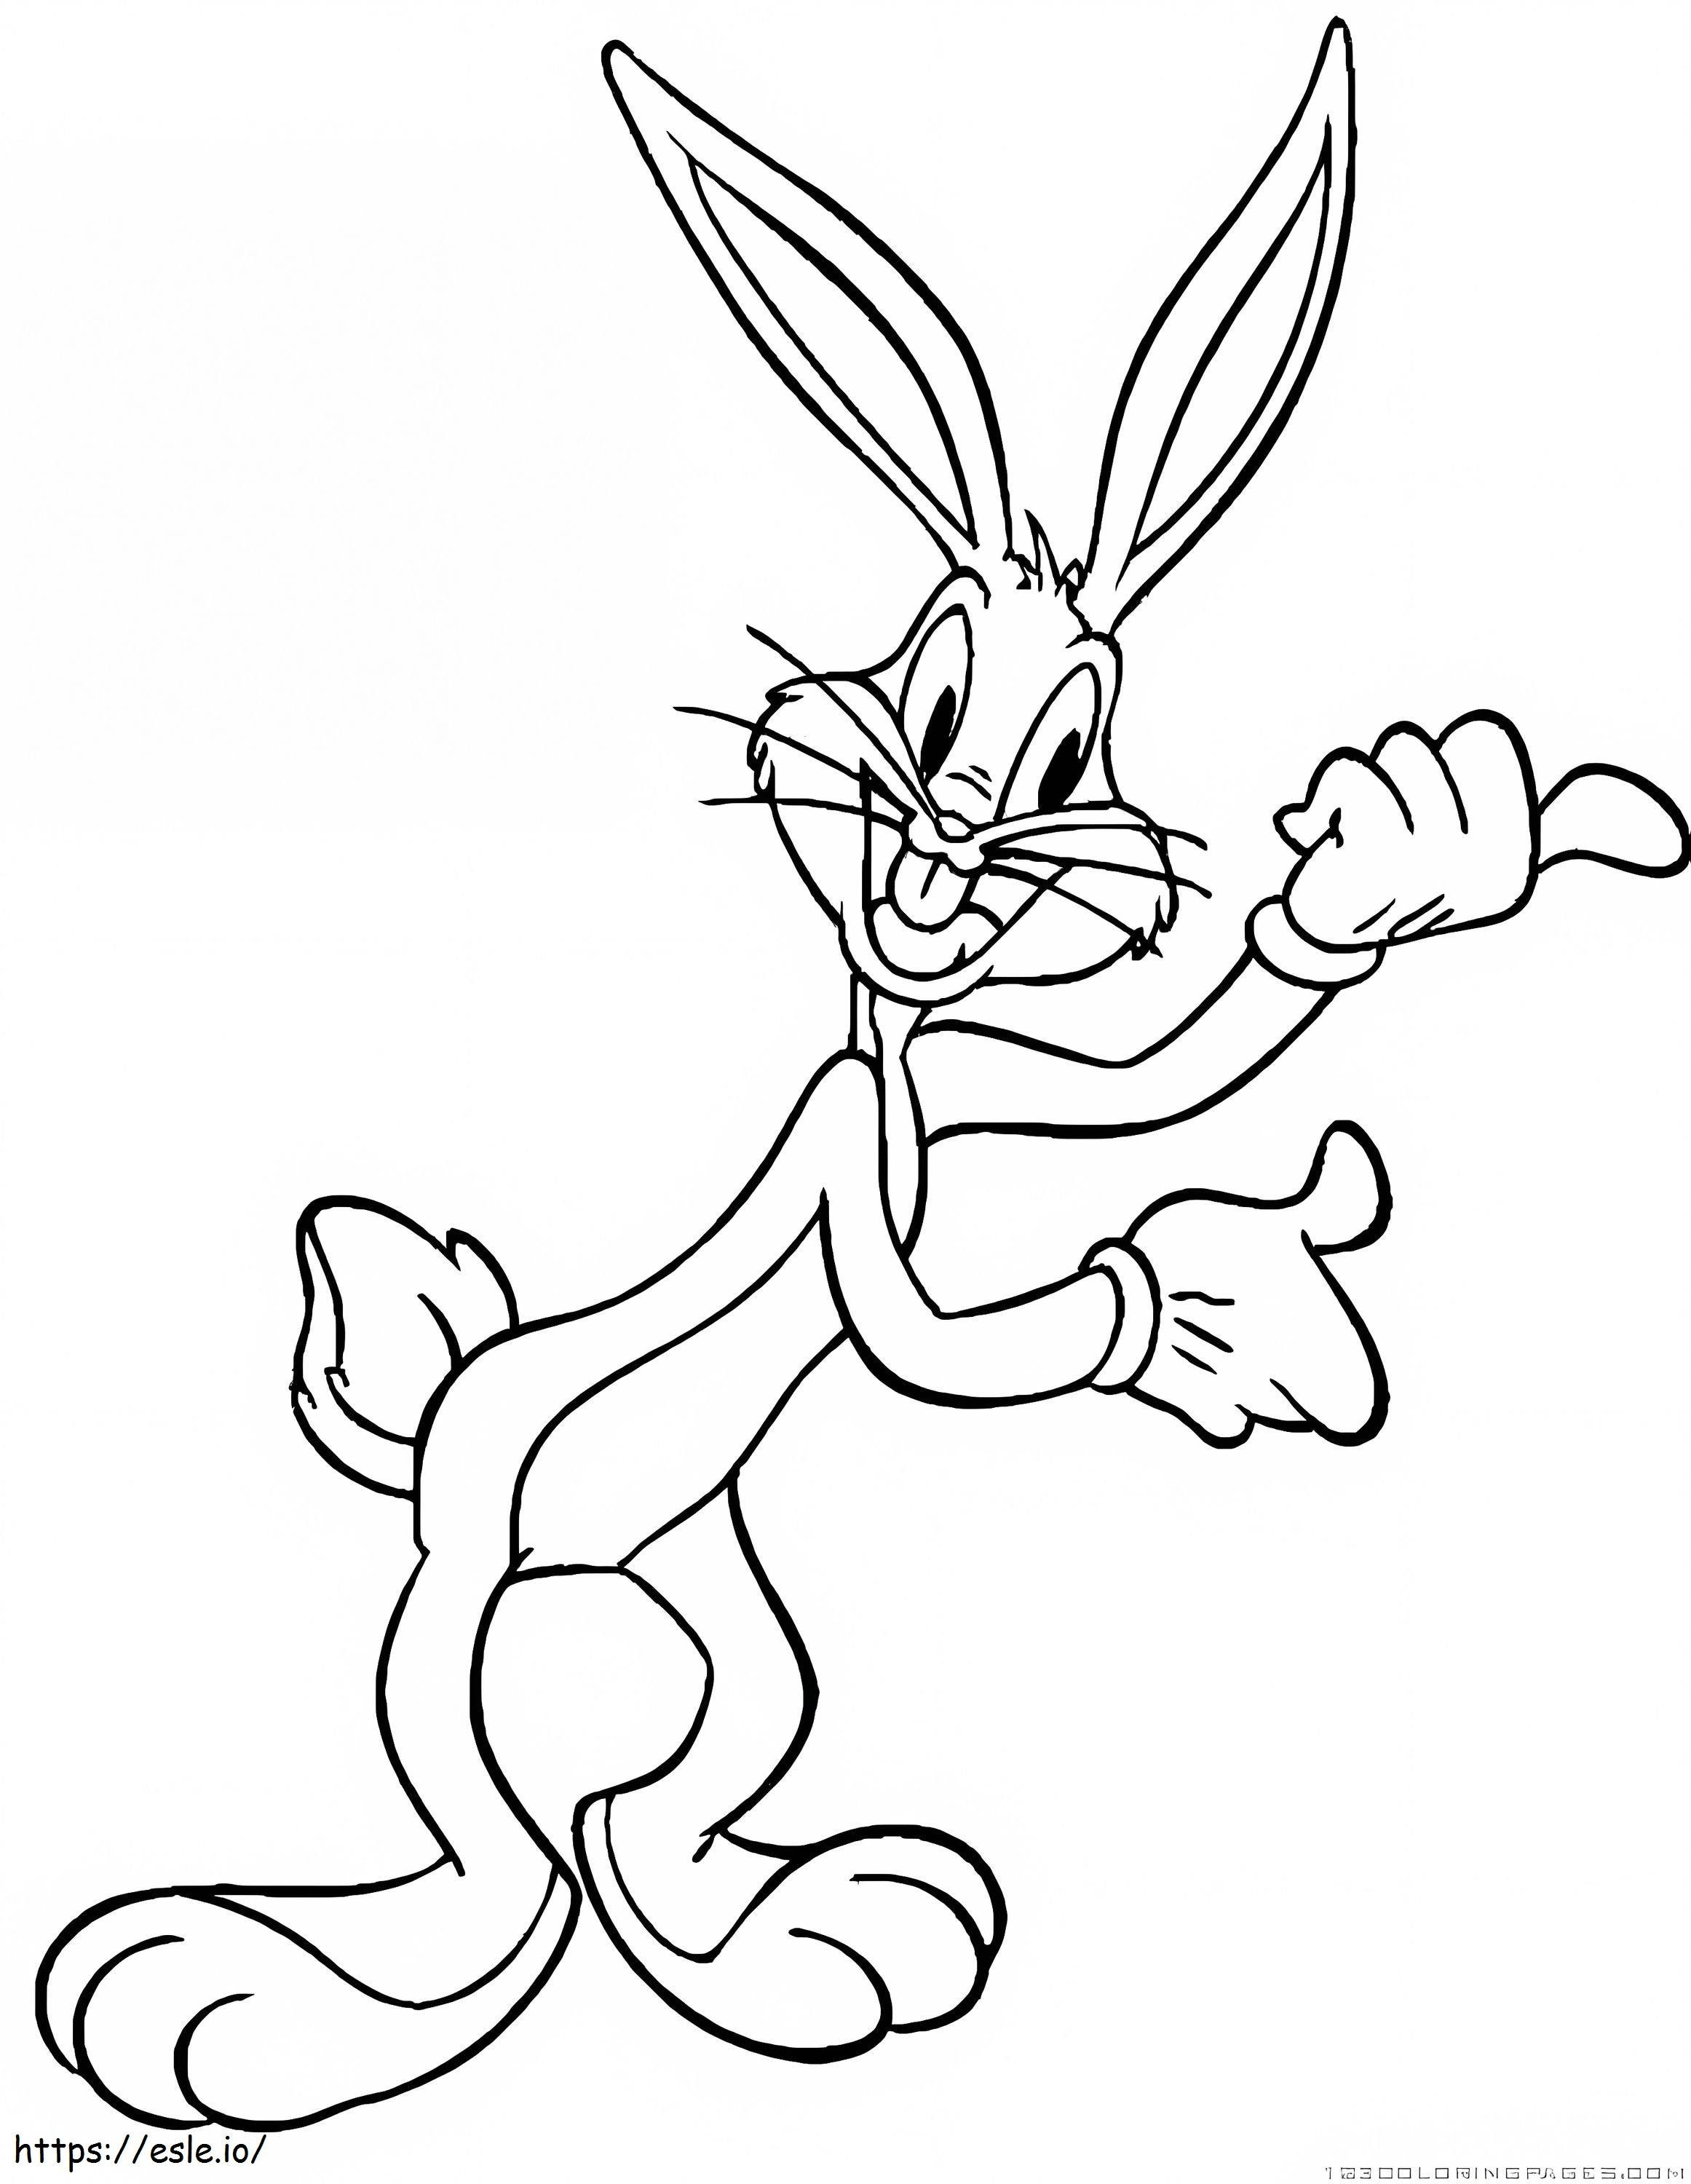 Toller Bugs Bunny ausmalbilder